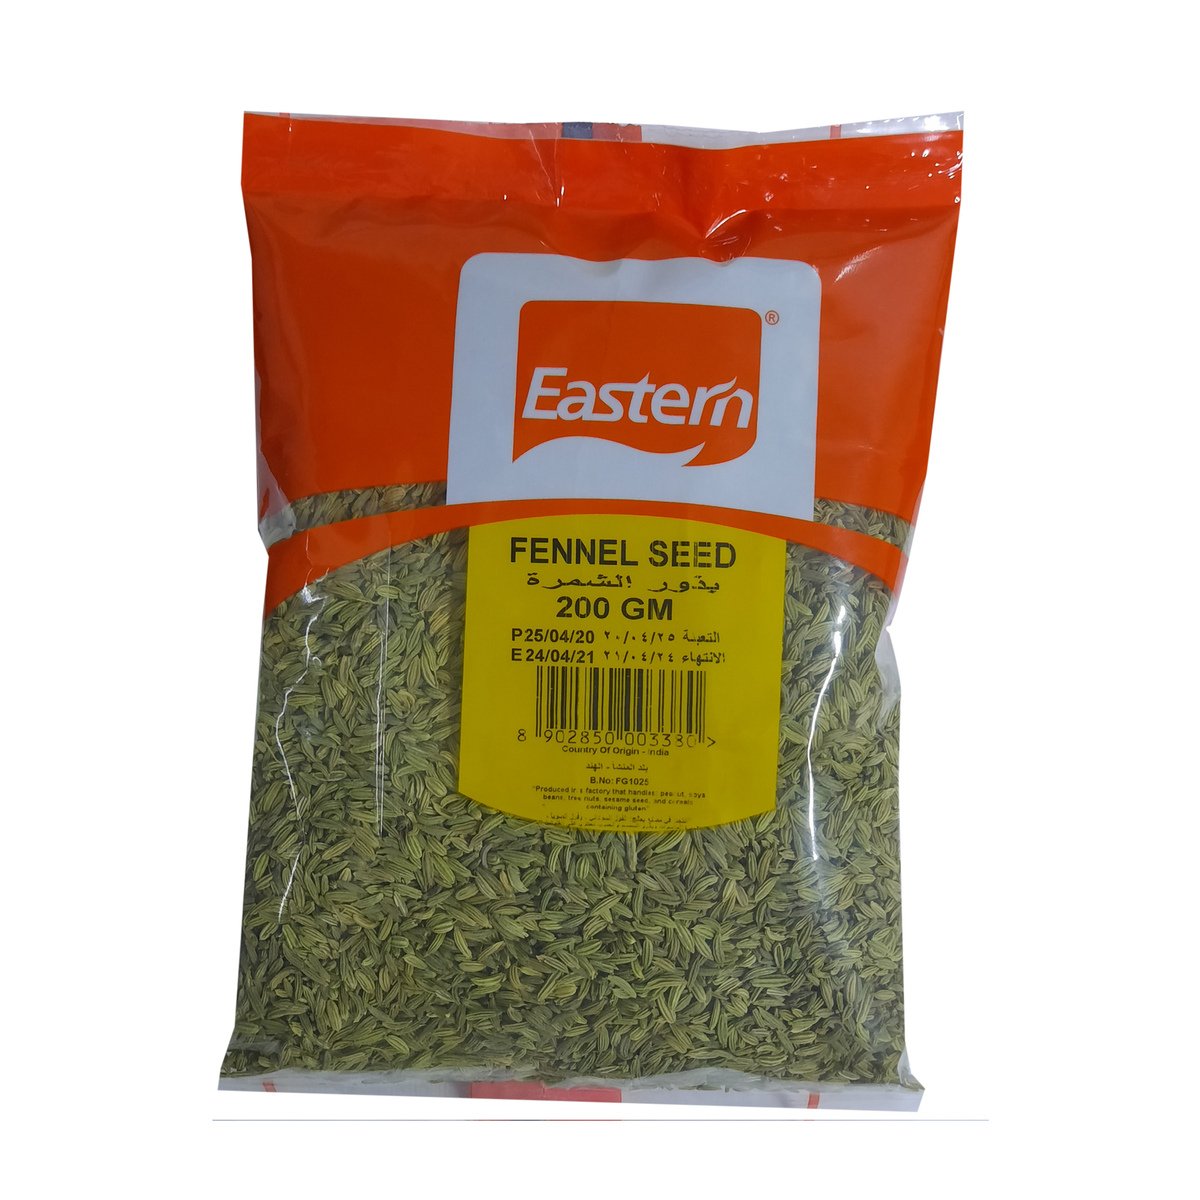 Eastern Fennel Seed 200 g